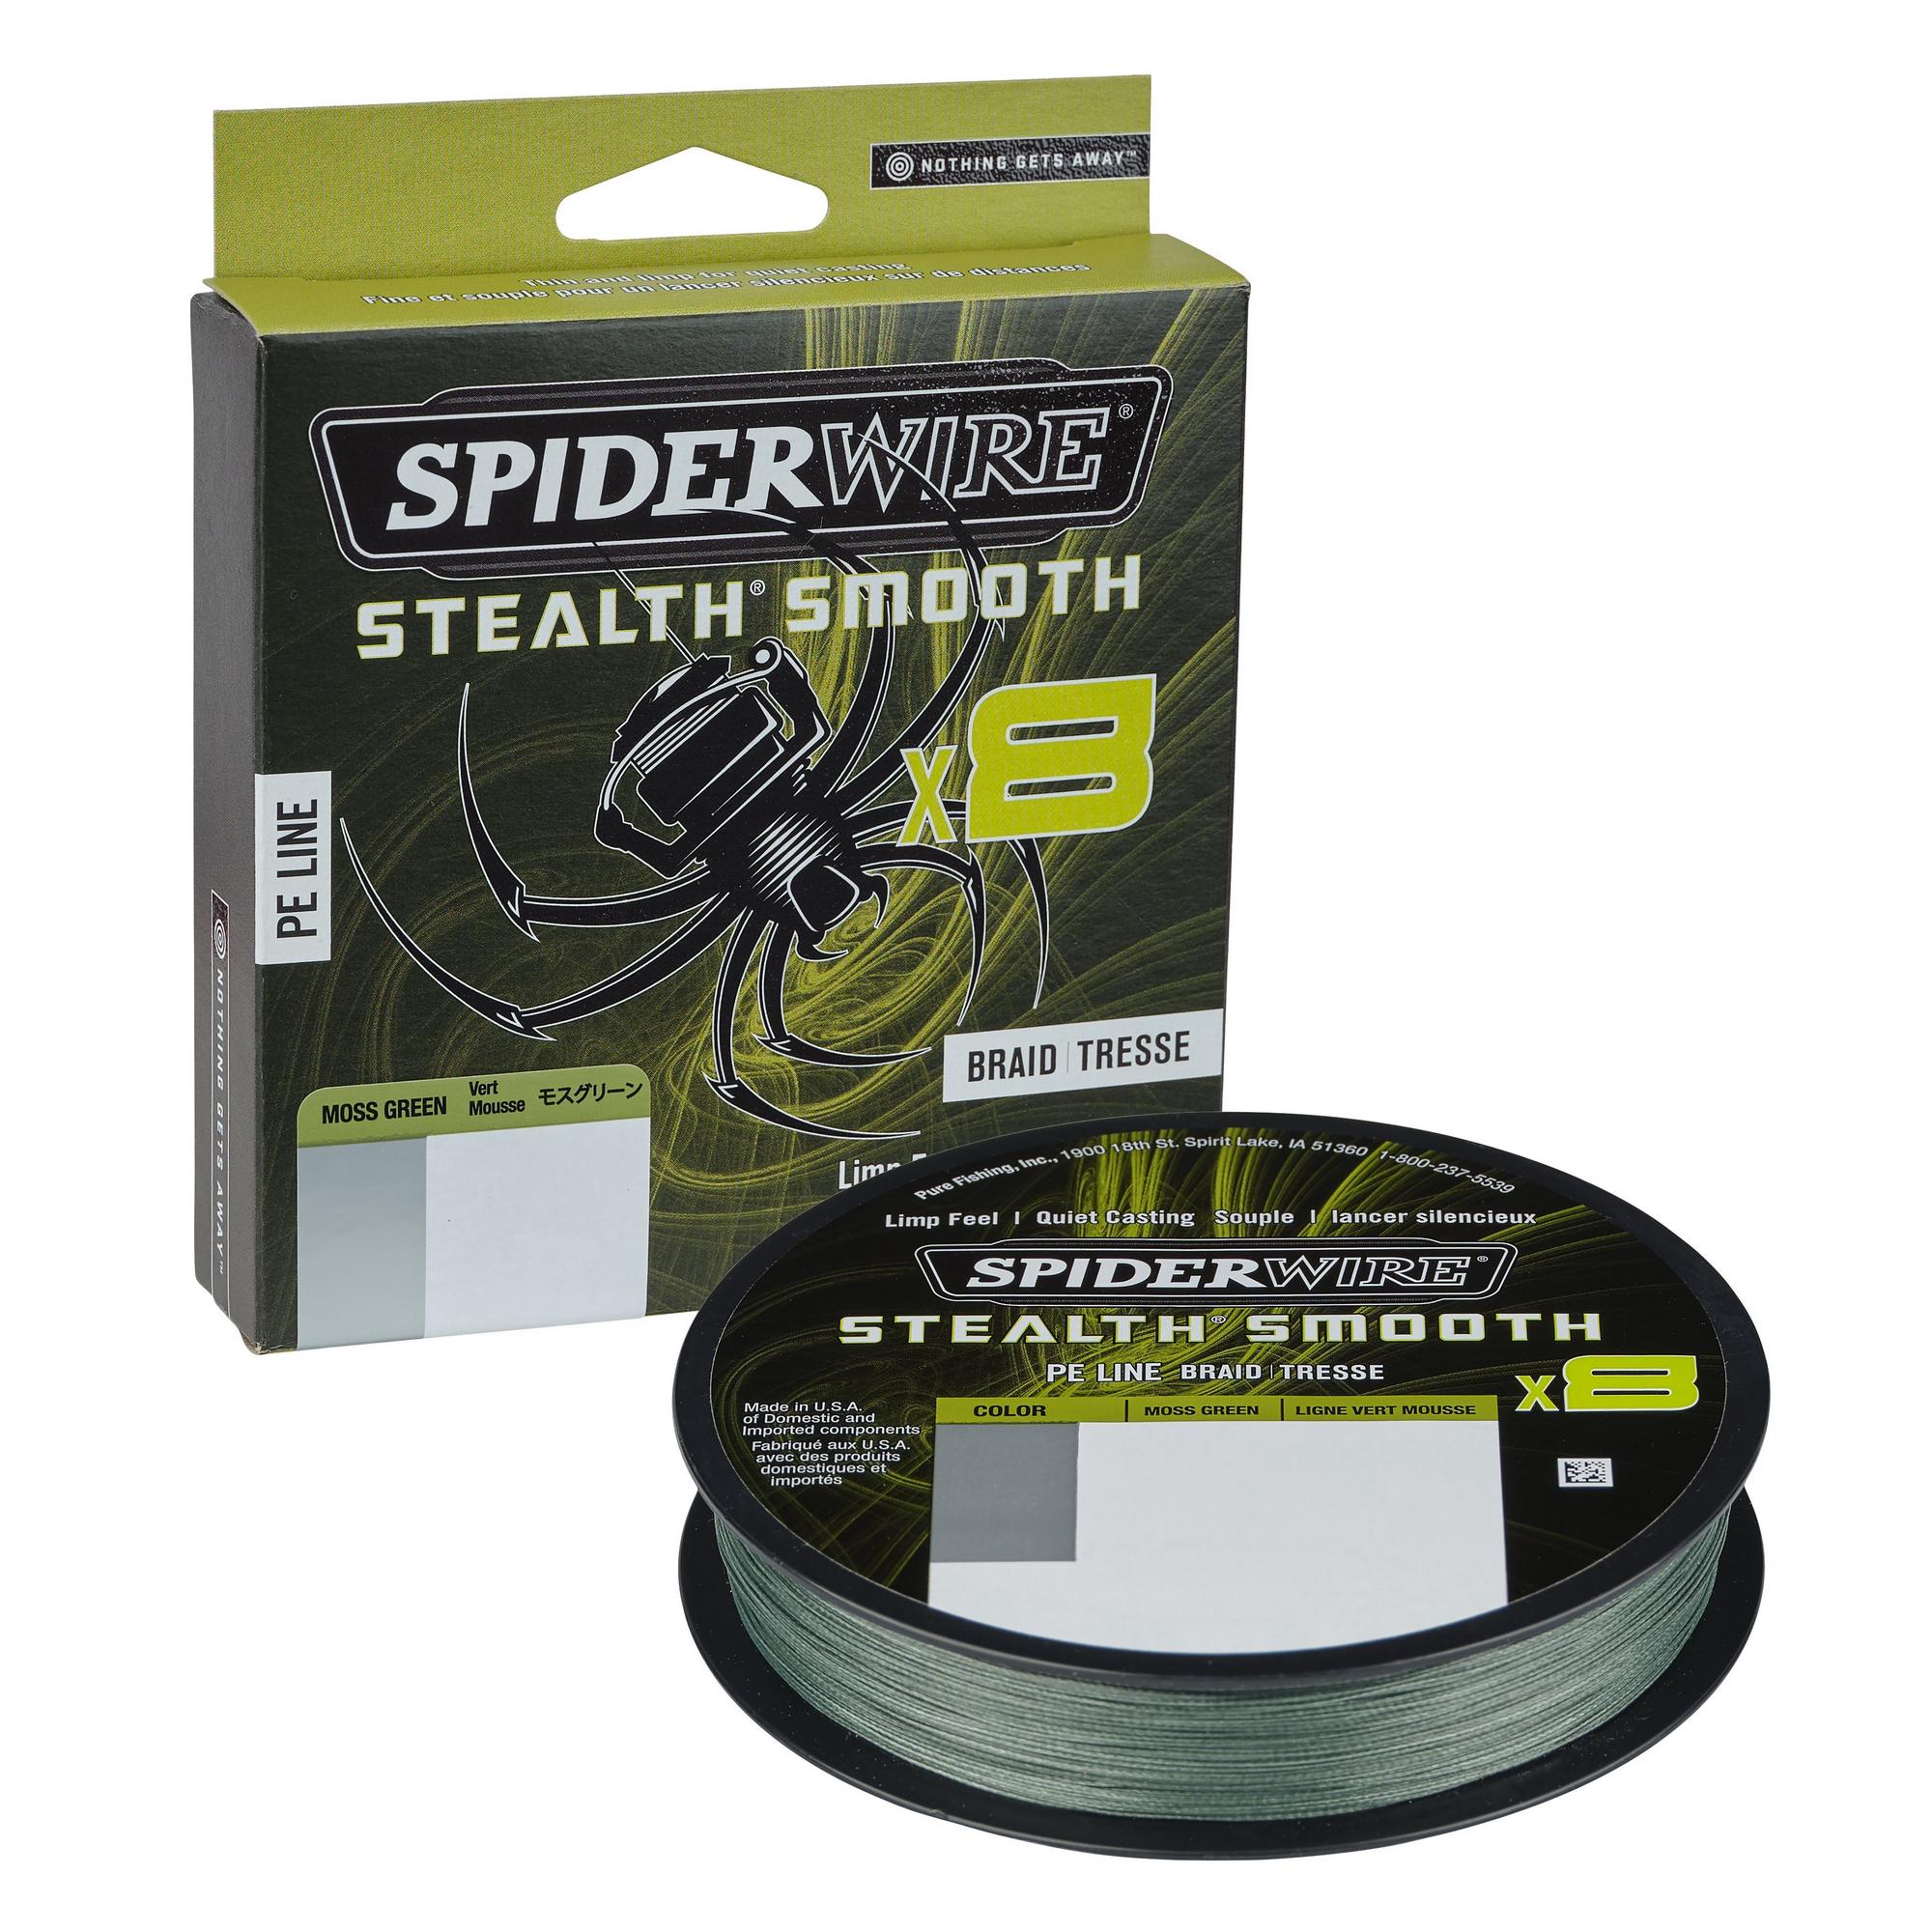 Spiderwire Stealth Smooth 8 Moss Green Geflochtene Schnur (300m)